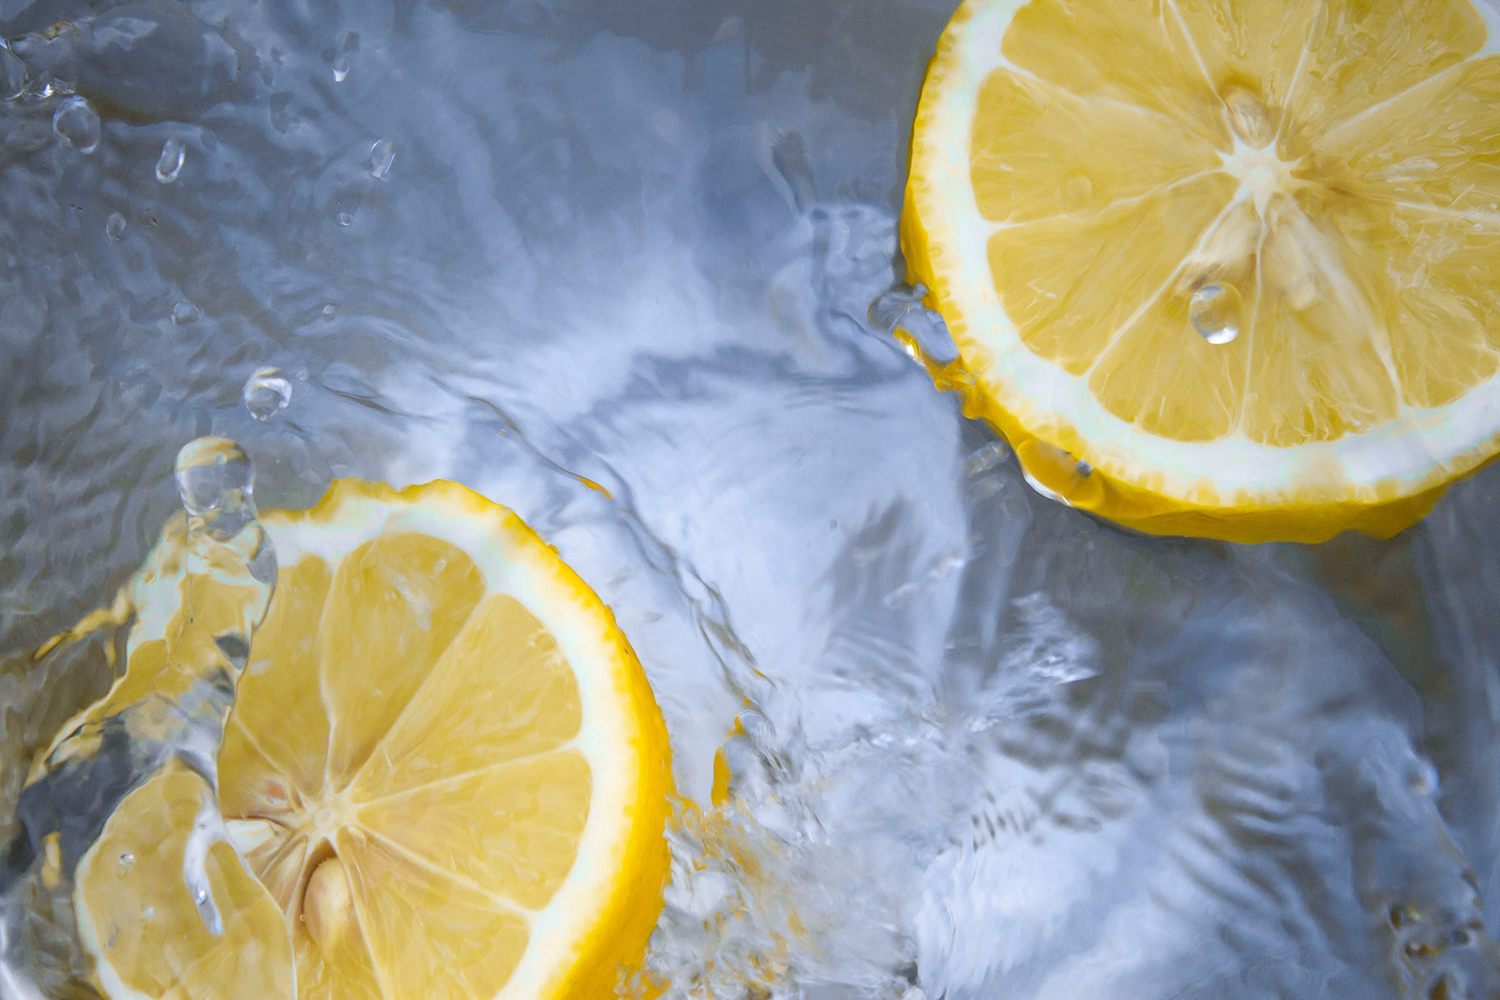 Вода, кубик льда или ломтик лимона&nbsp;&mdash; популярные средства при борьбе с икотой